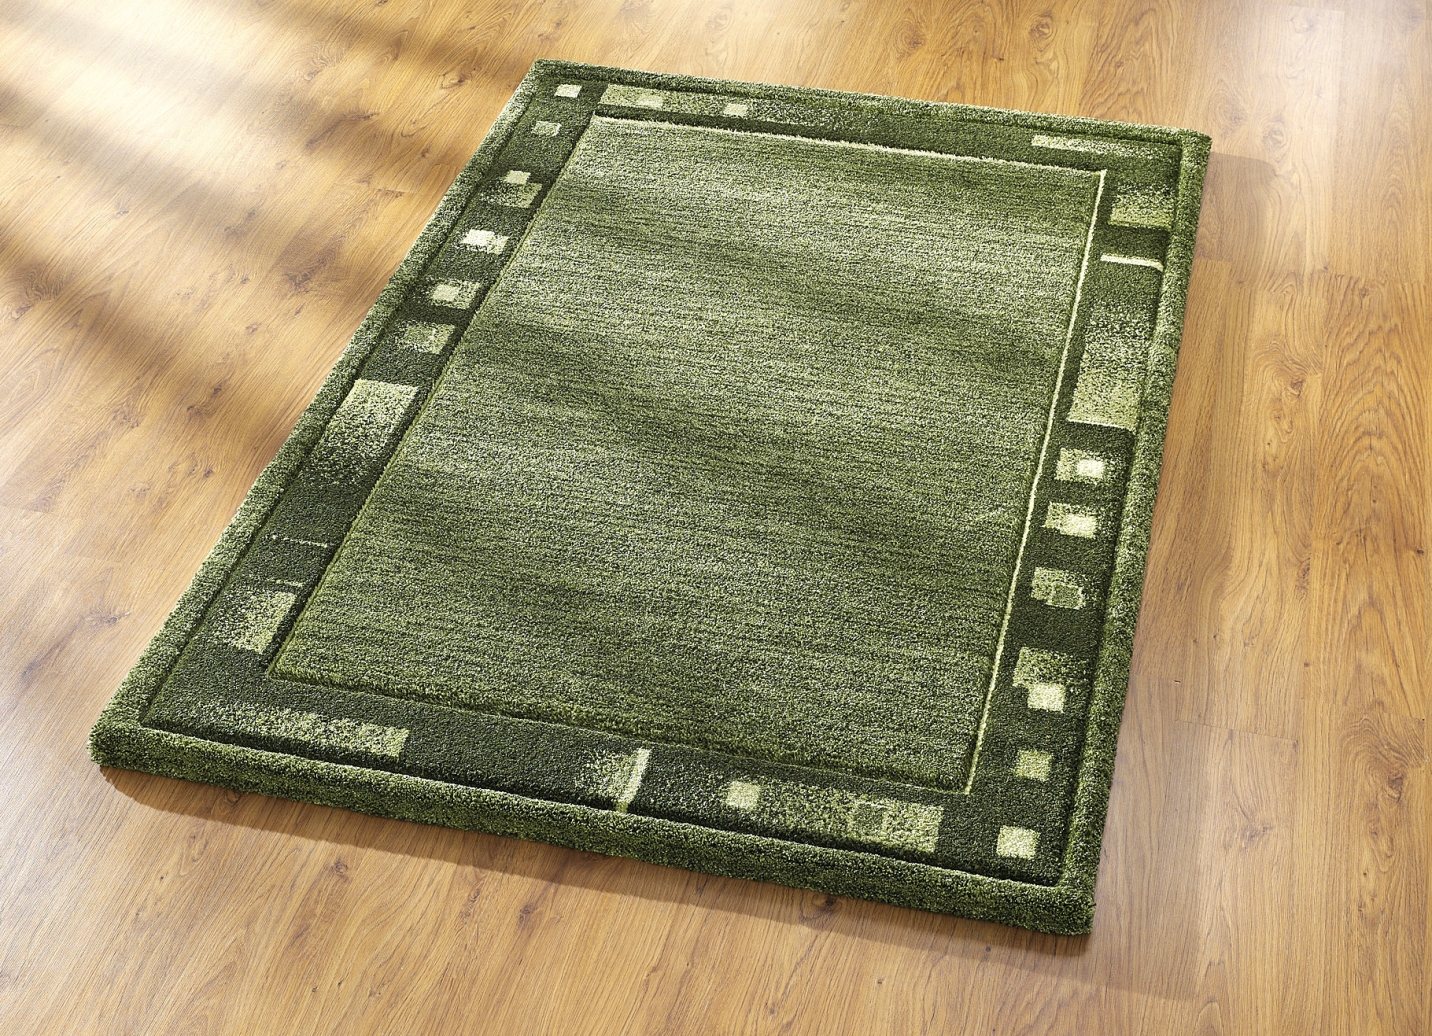 Brücken und Teppiche in bewährter Qualität, Größe 249 (Teppich, 160x230 cm), Grün von BADER